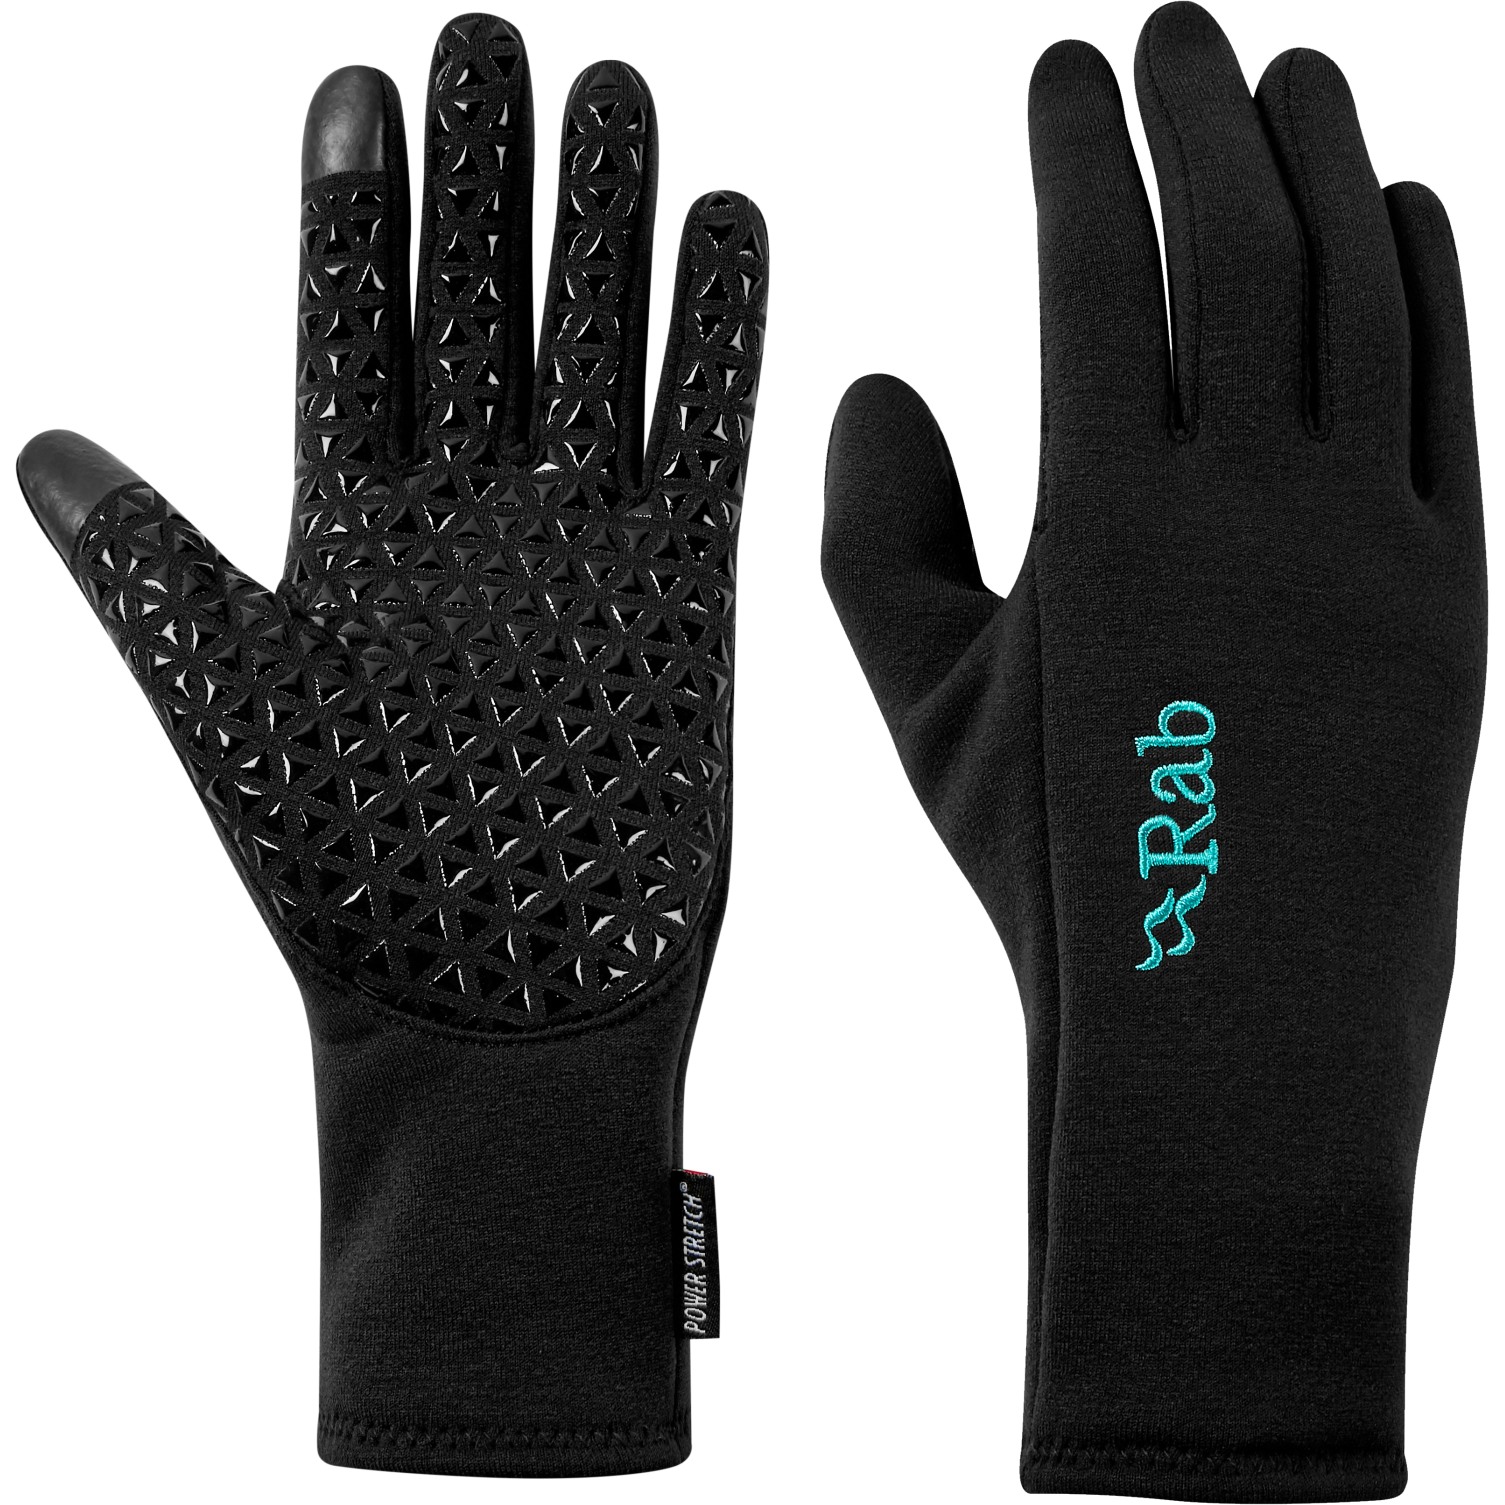 Productfoto van Rab Power Stretch Contact Grip Dames Handschoenen - zwart